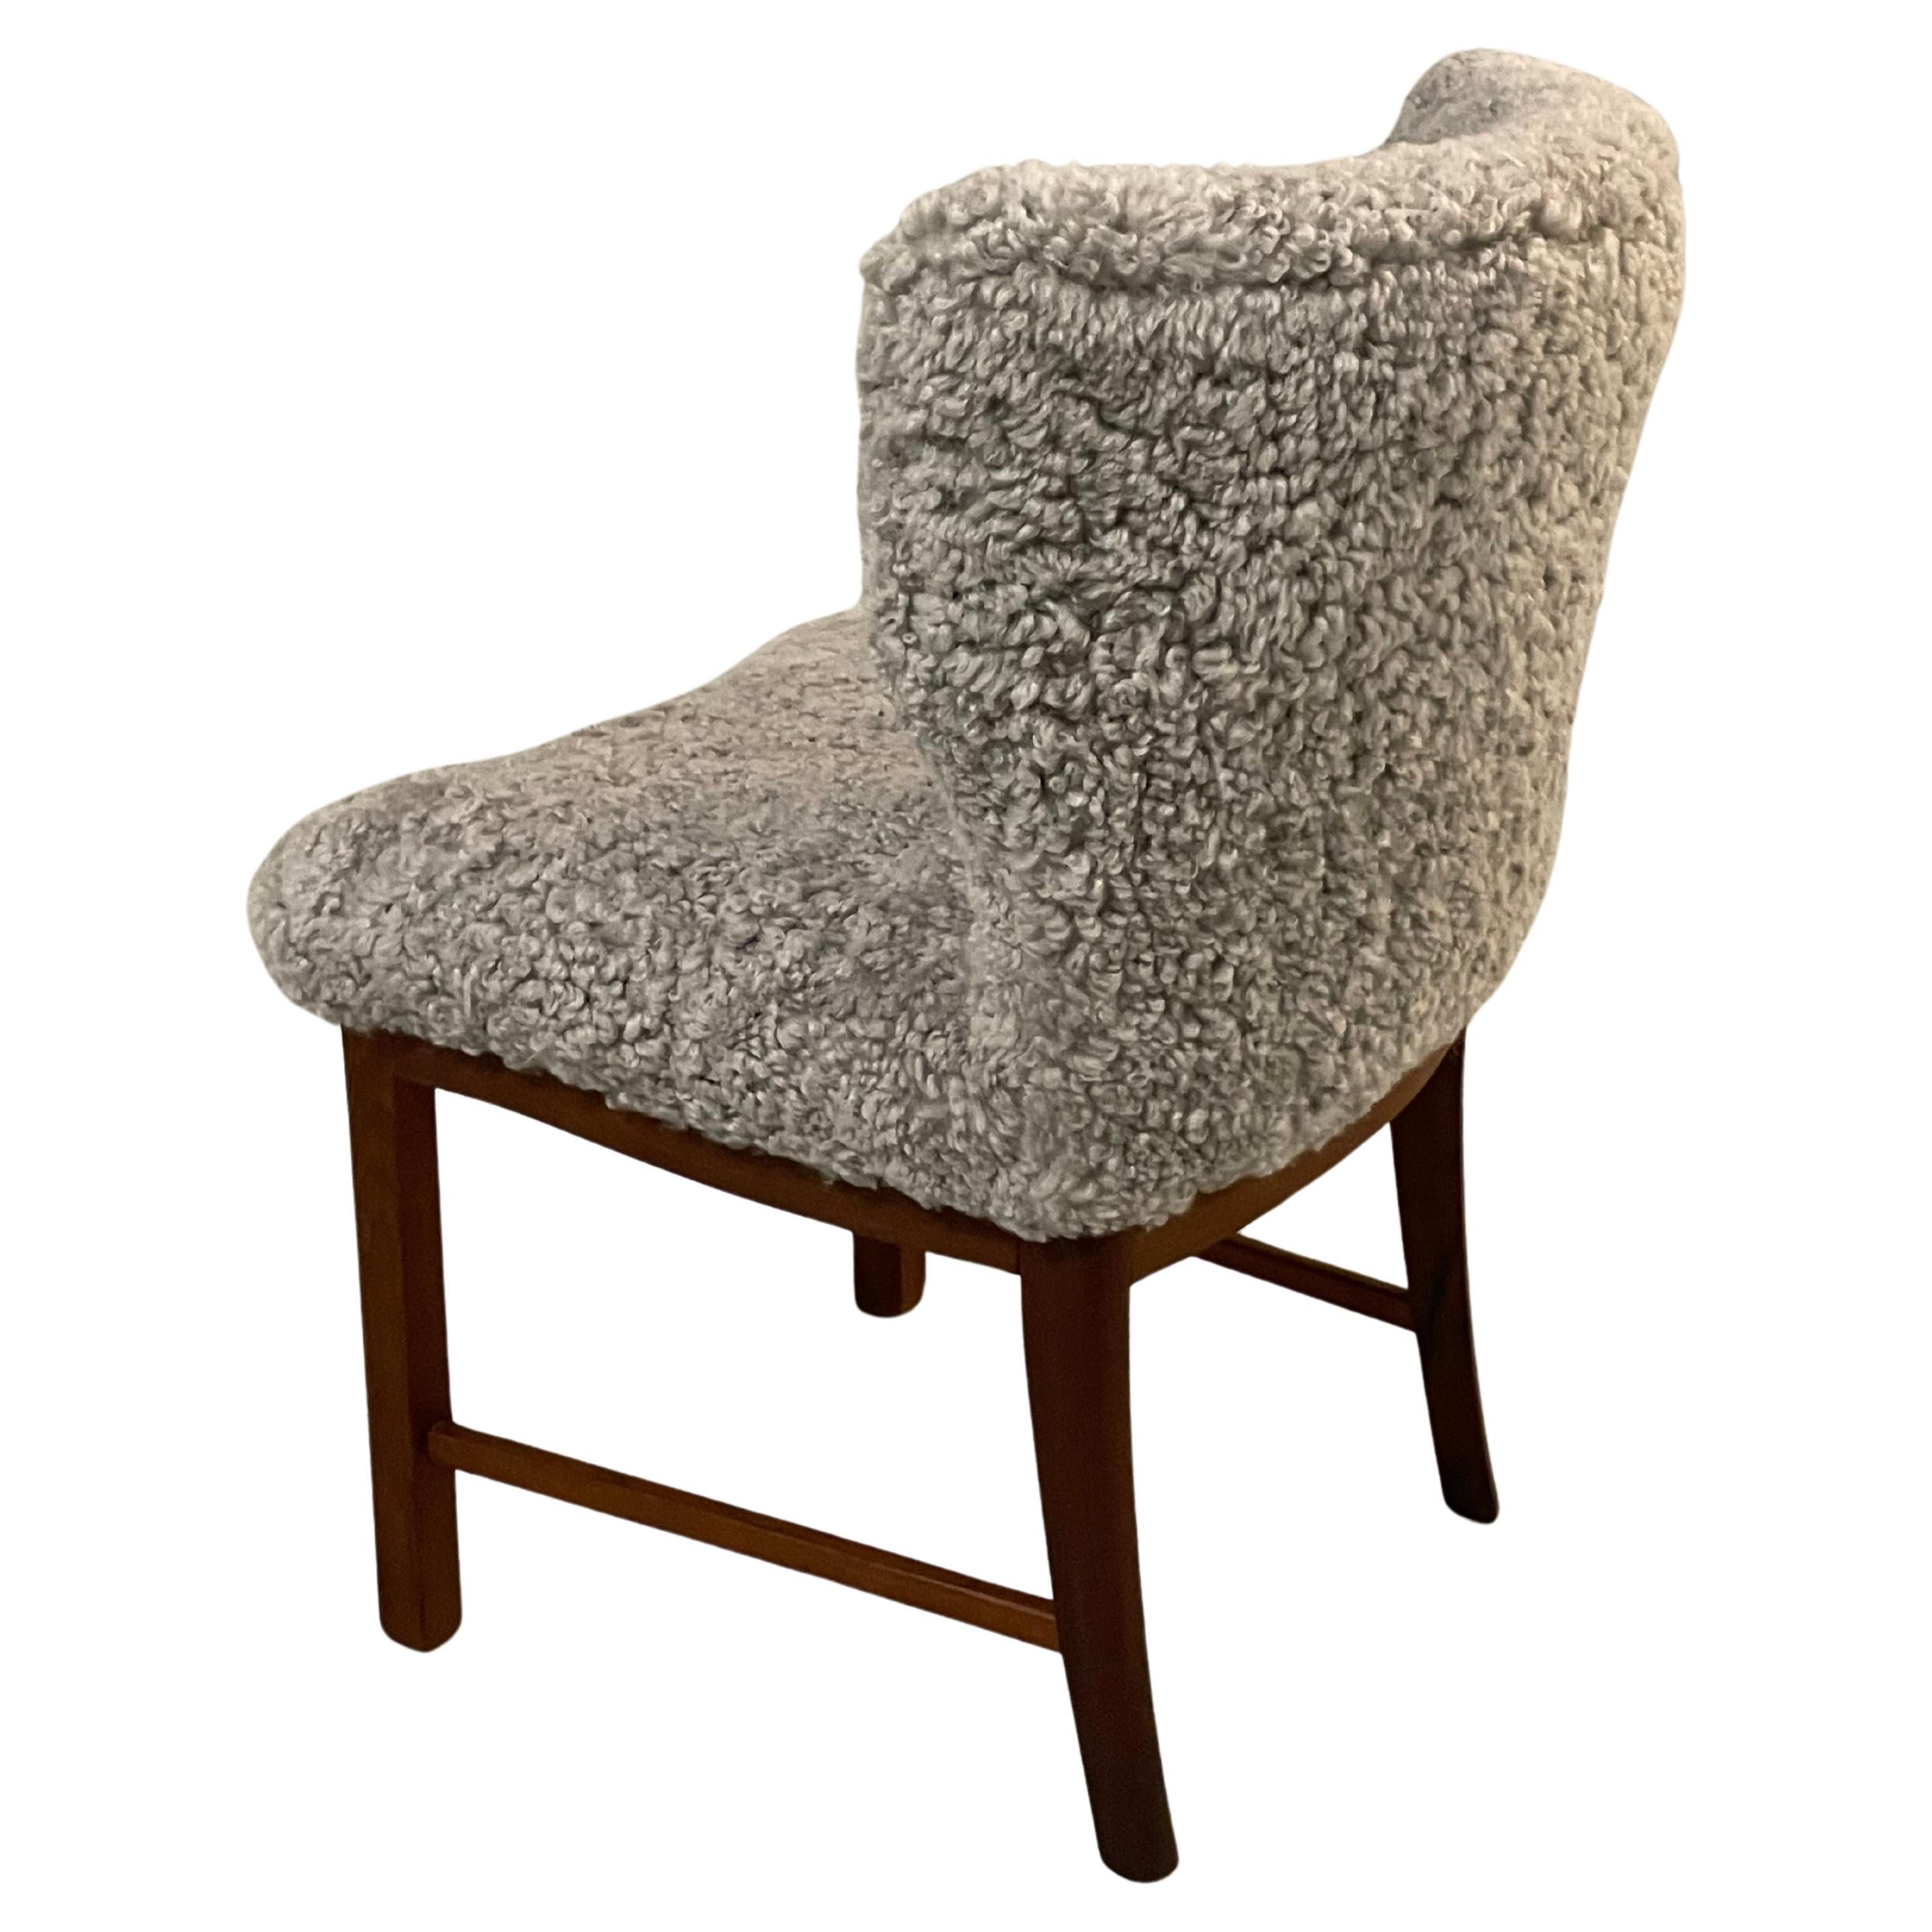 Ein sehr seltener Coktail oder Beistellstuhl, neu gepolstert mit grauem Schafsleder. Sehr elegantes und modernes Design. 